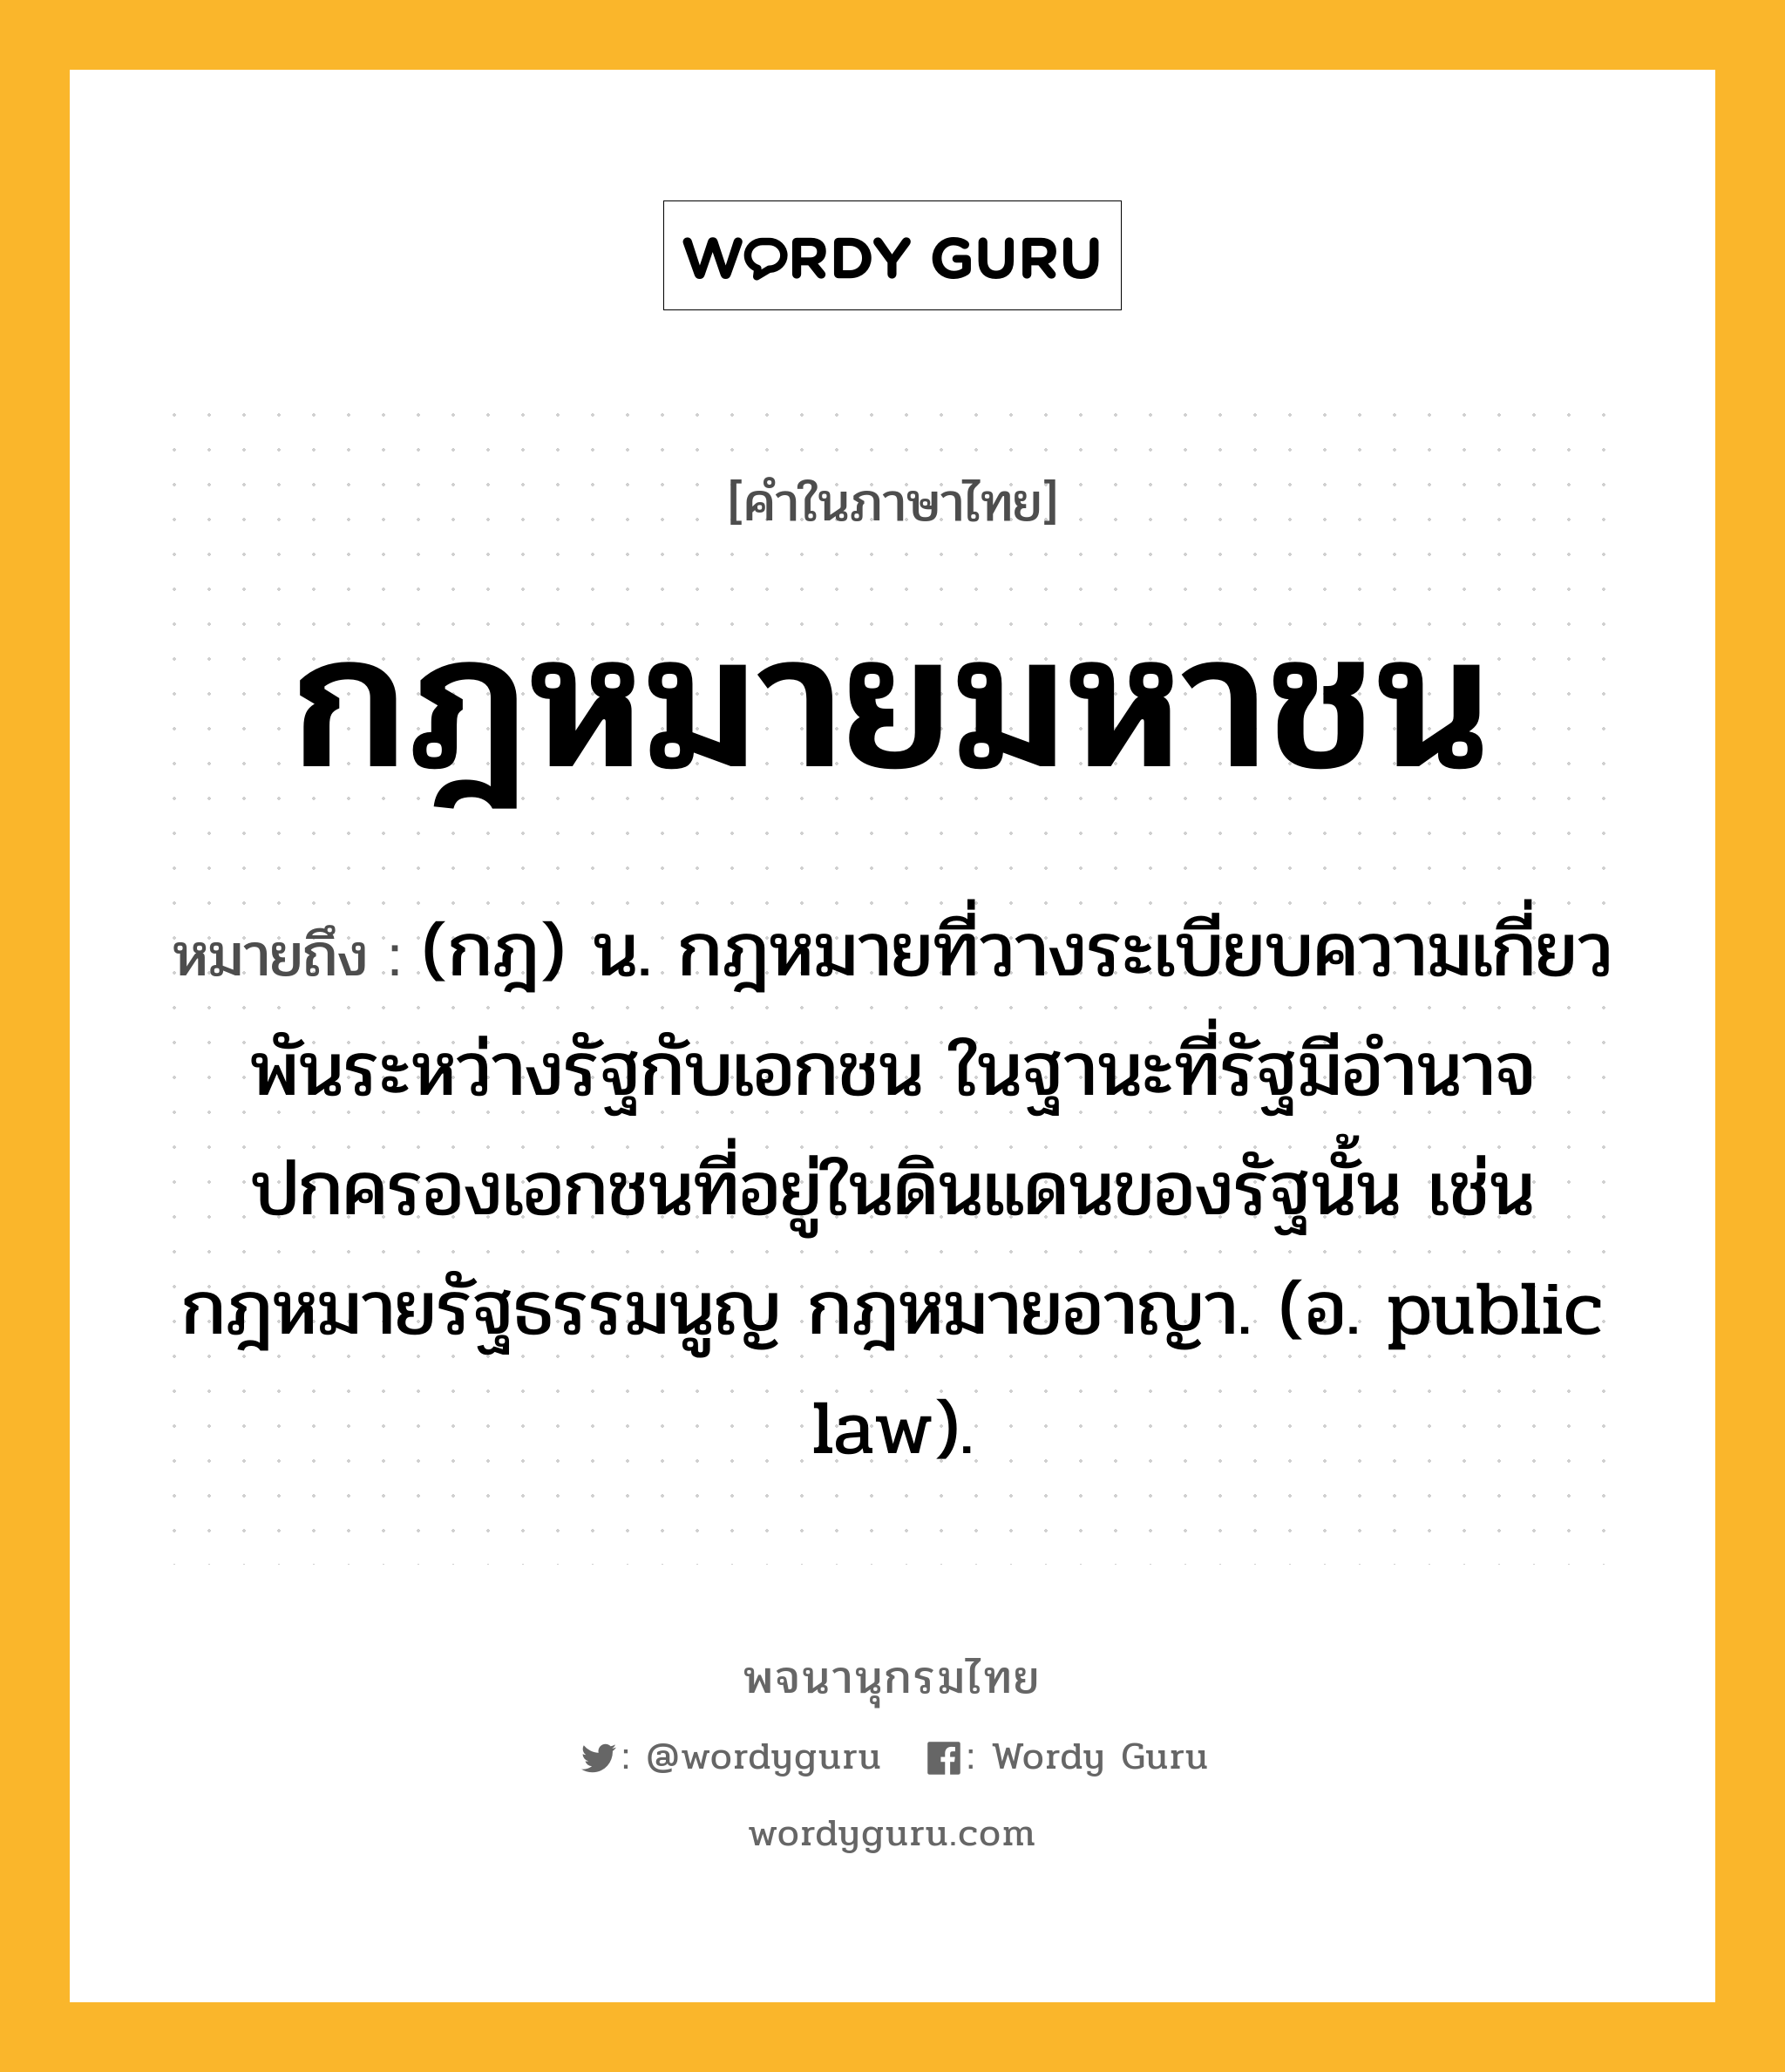 กฎหมายมหาชน หมายถึงอะไร?, คำในภาษาไทย กฎหมายมหาชน หมายถึง (กฎ) น. กฎหมายที่วางระเบียบความเกี่ยวพันระหว่างรัฐกับเอกชน ในฐานะที่รัฐมีอำนาจปกครองเอกชนที่อยู่ในดินแดนของรัฐนั้น เช่น กฎหมายรัฐธรรมนูญ กฎหมายอาญา. (อ. public law).